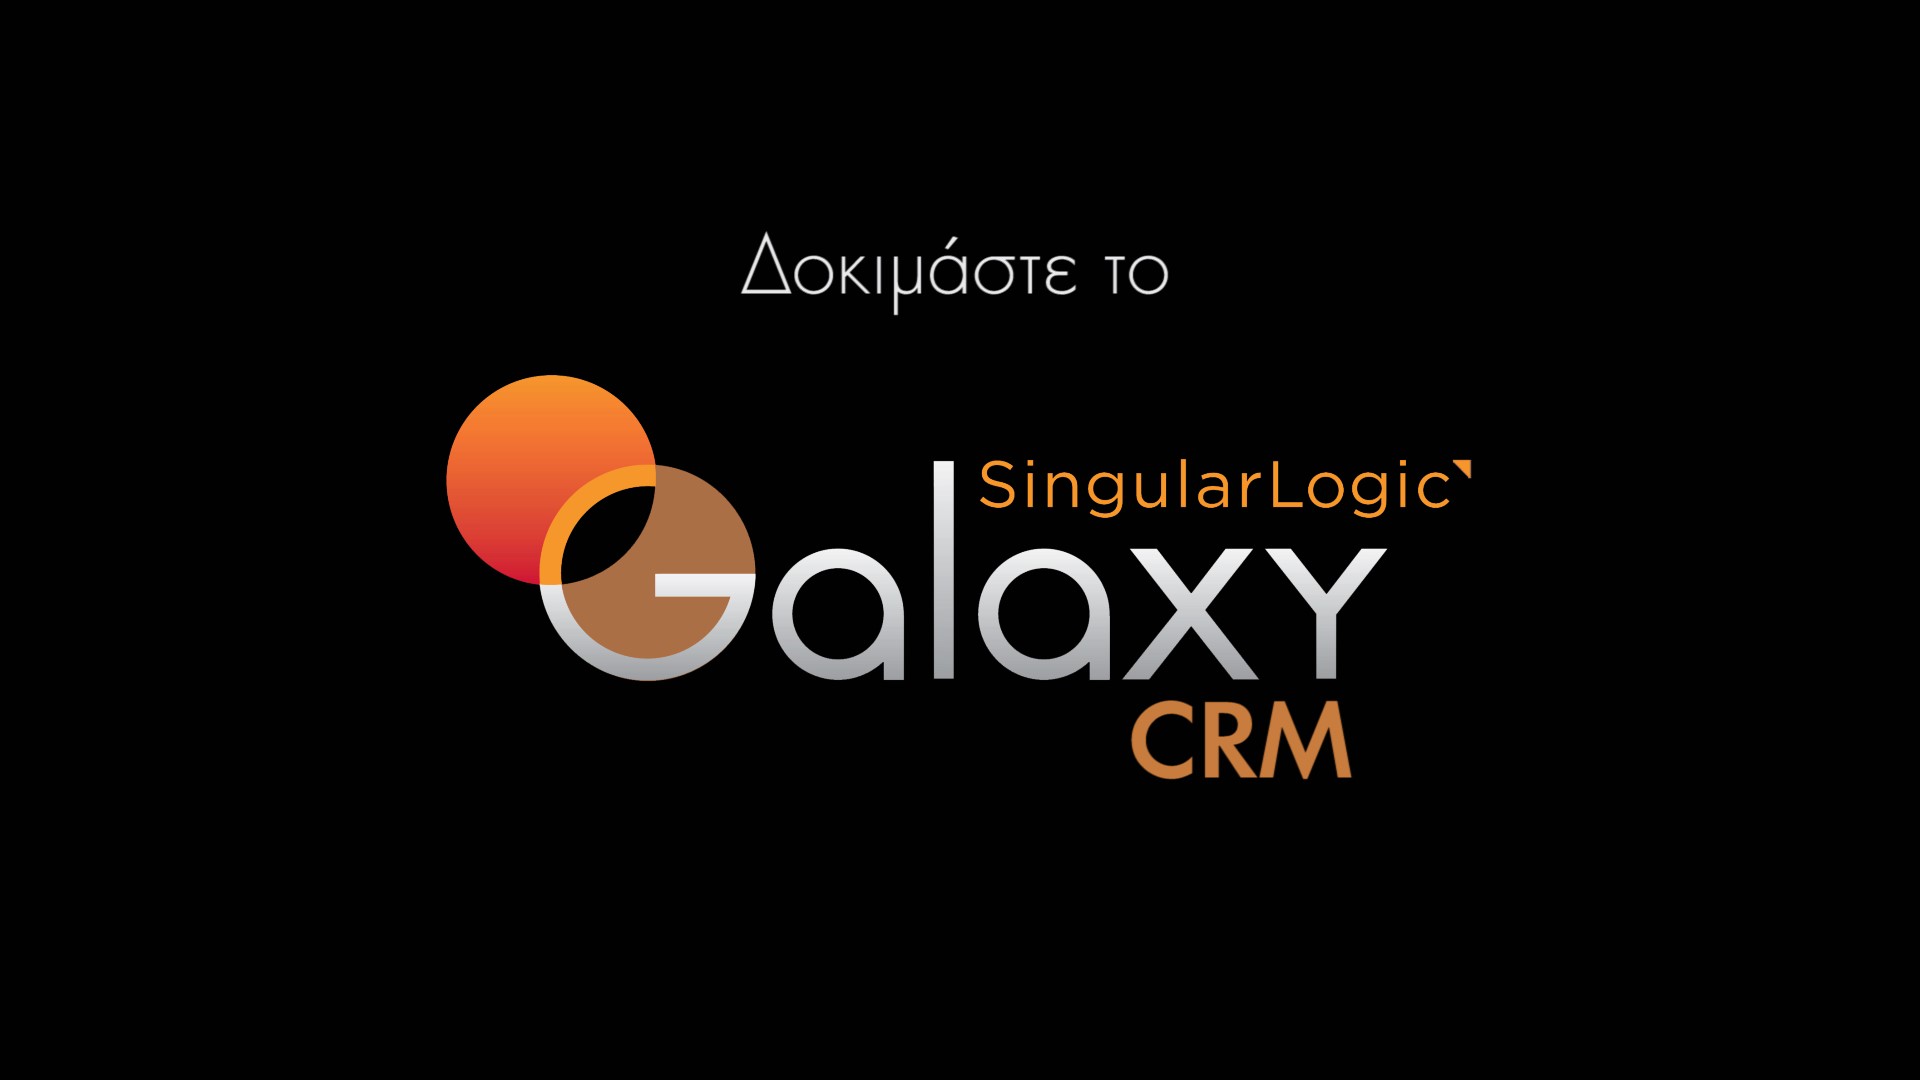 ΒΙΝΤΕΟ: SingularLogic Galaxy CRM. Δοκιμάστε το